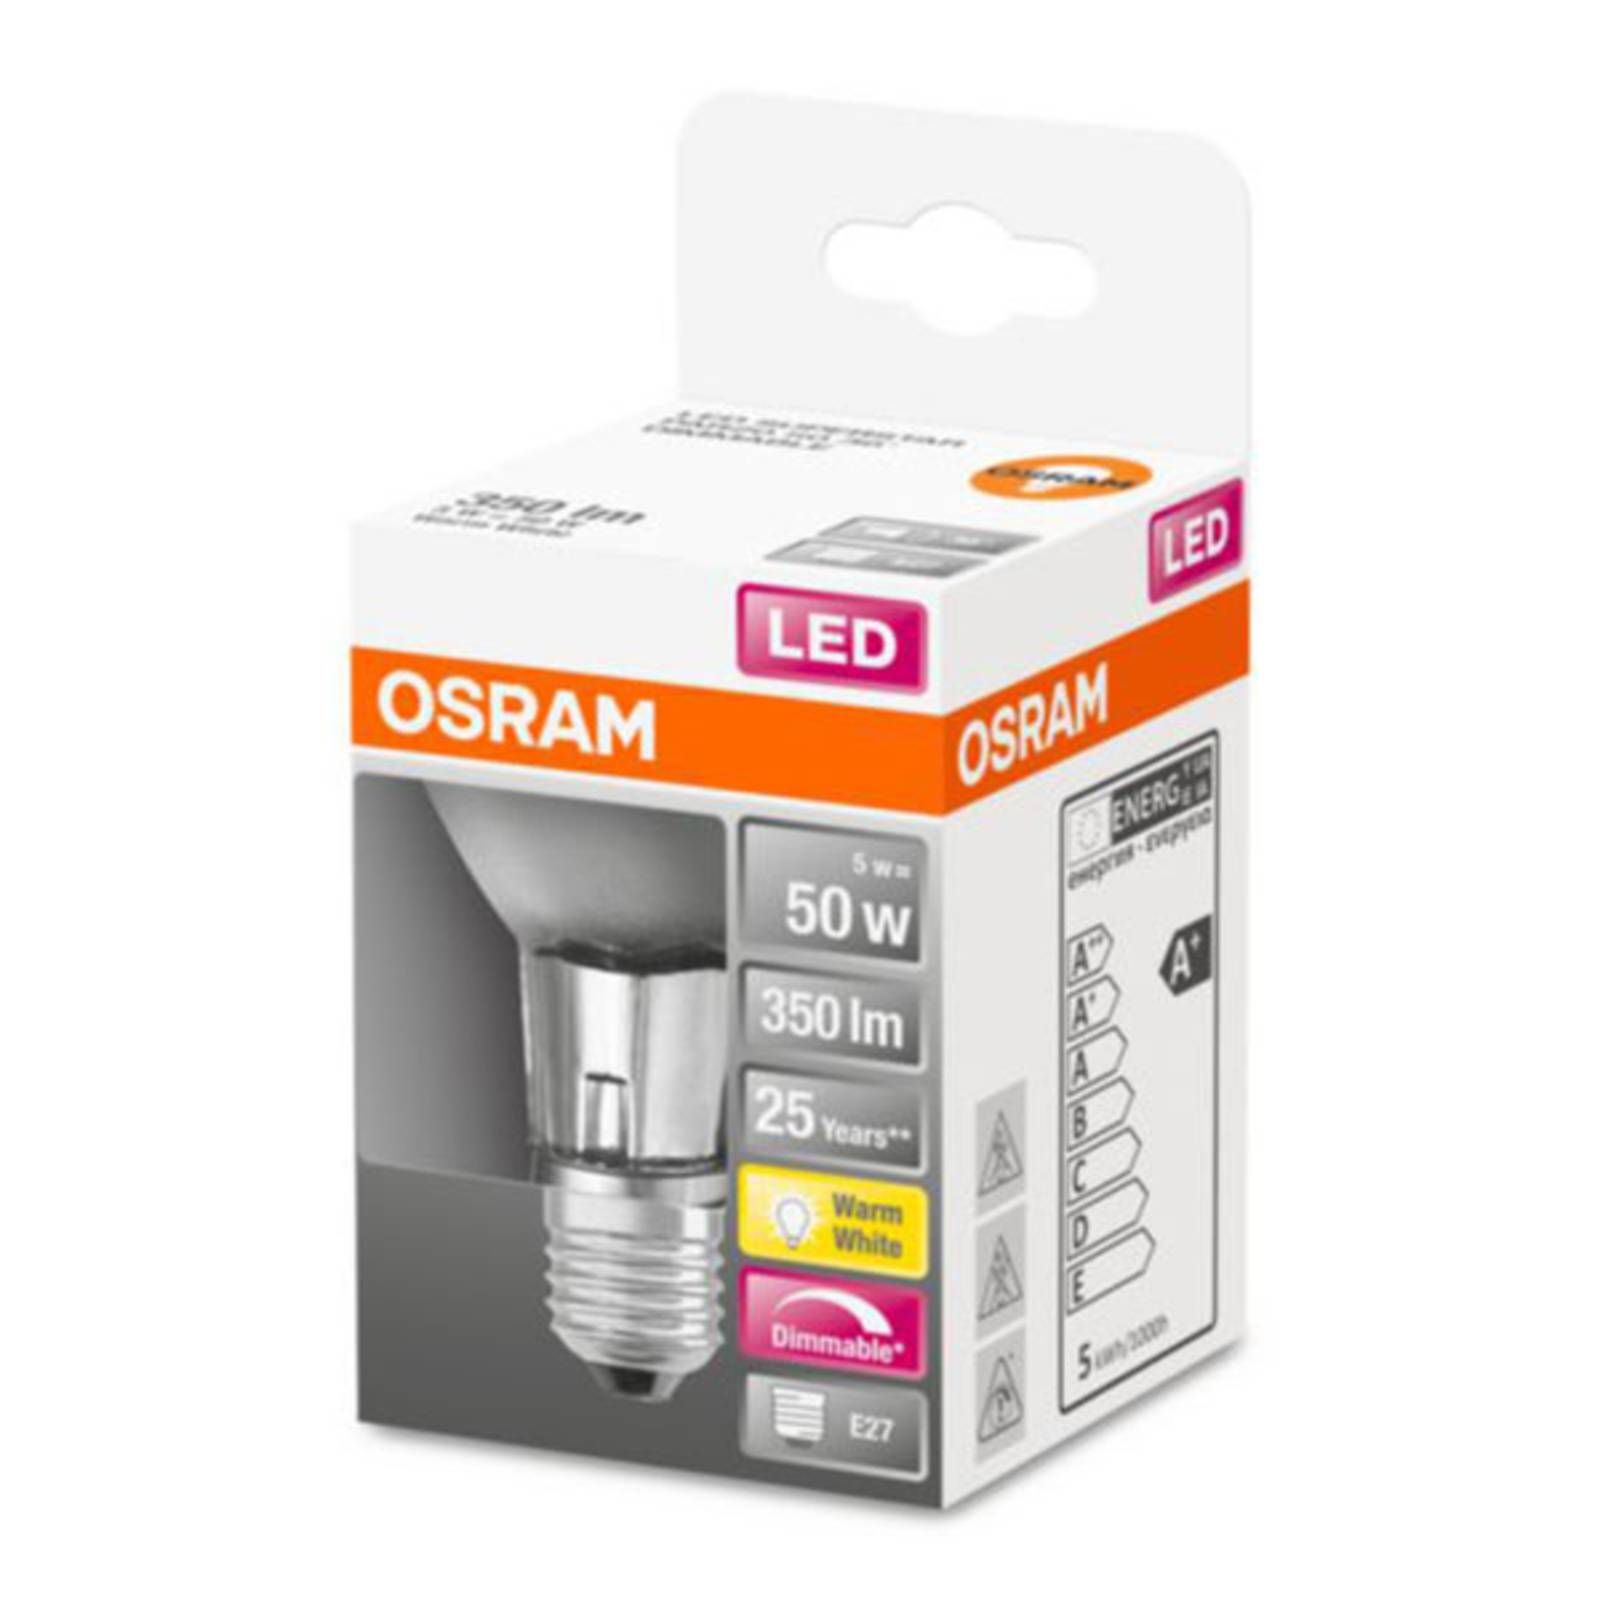 OSRAM LED žiarovka E27 6, 4W PAR20 2 700K stmieva, E27, 6.4W, Energialuokka: G, P: 7.8 cm